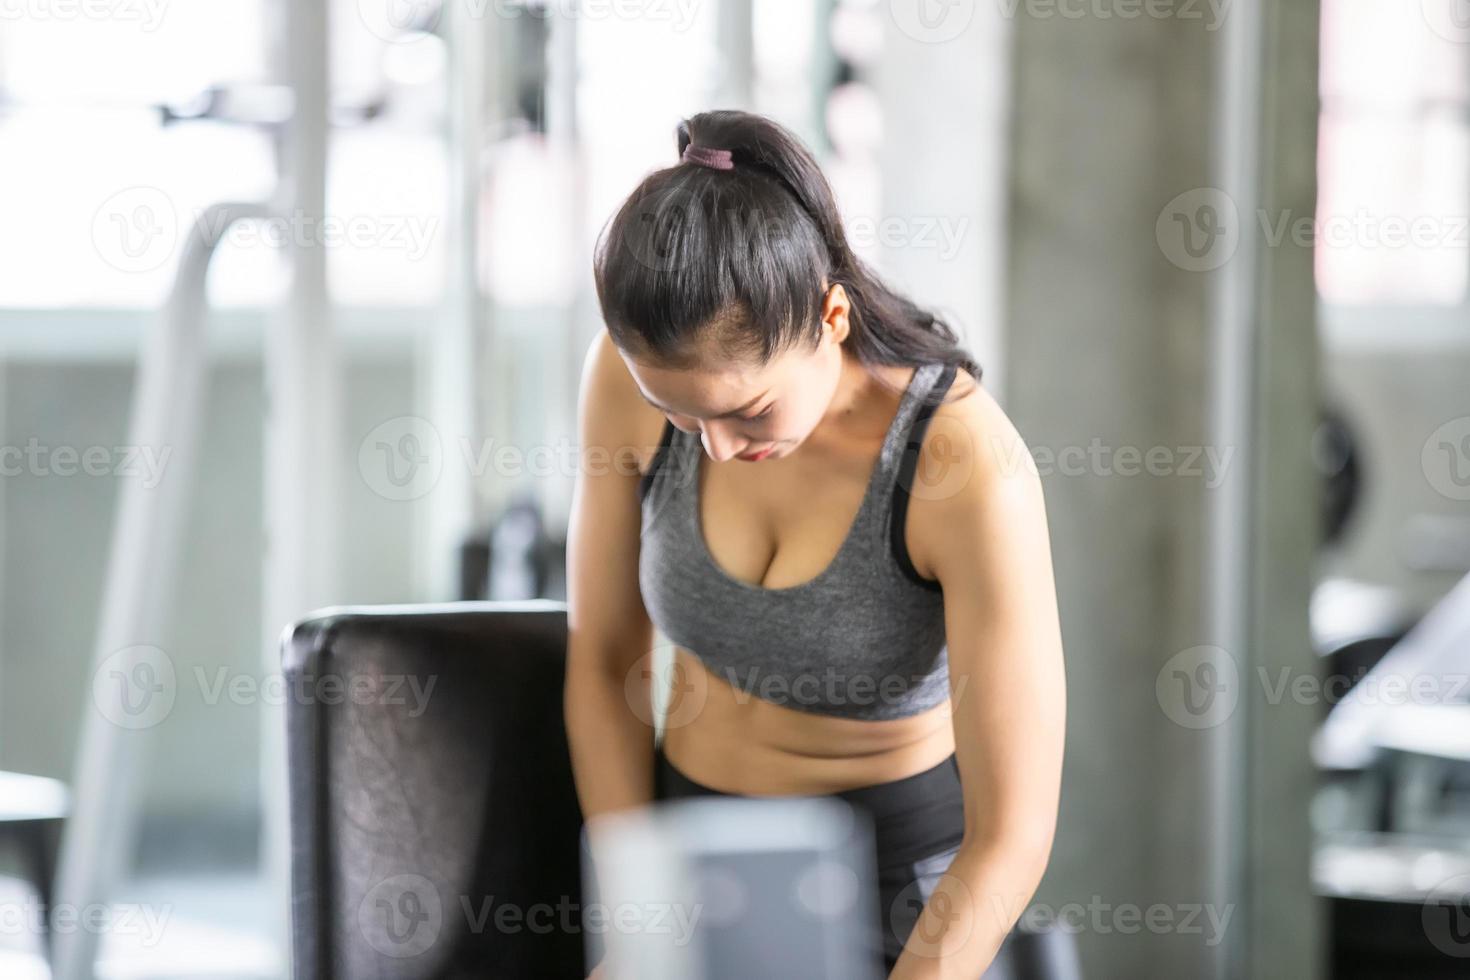 séance d'entraînement de jeune femme asiatique et exercice à la salle de fitness. photo